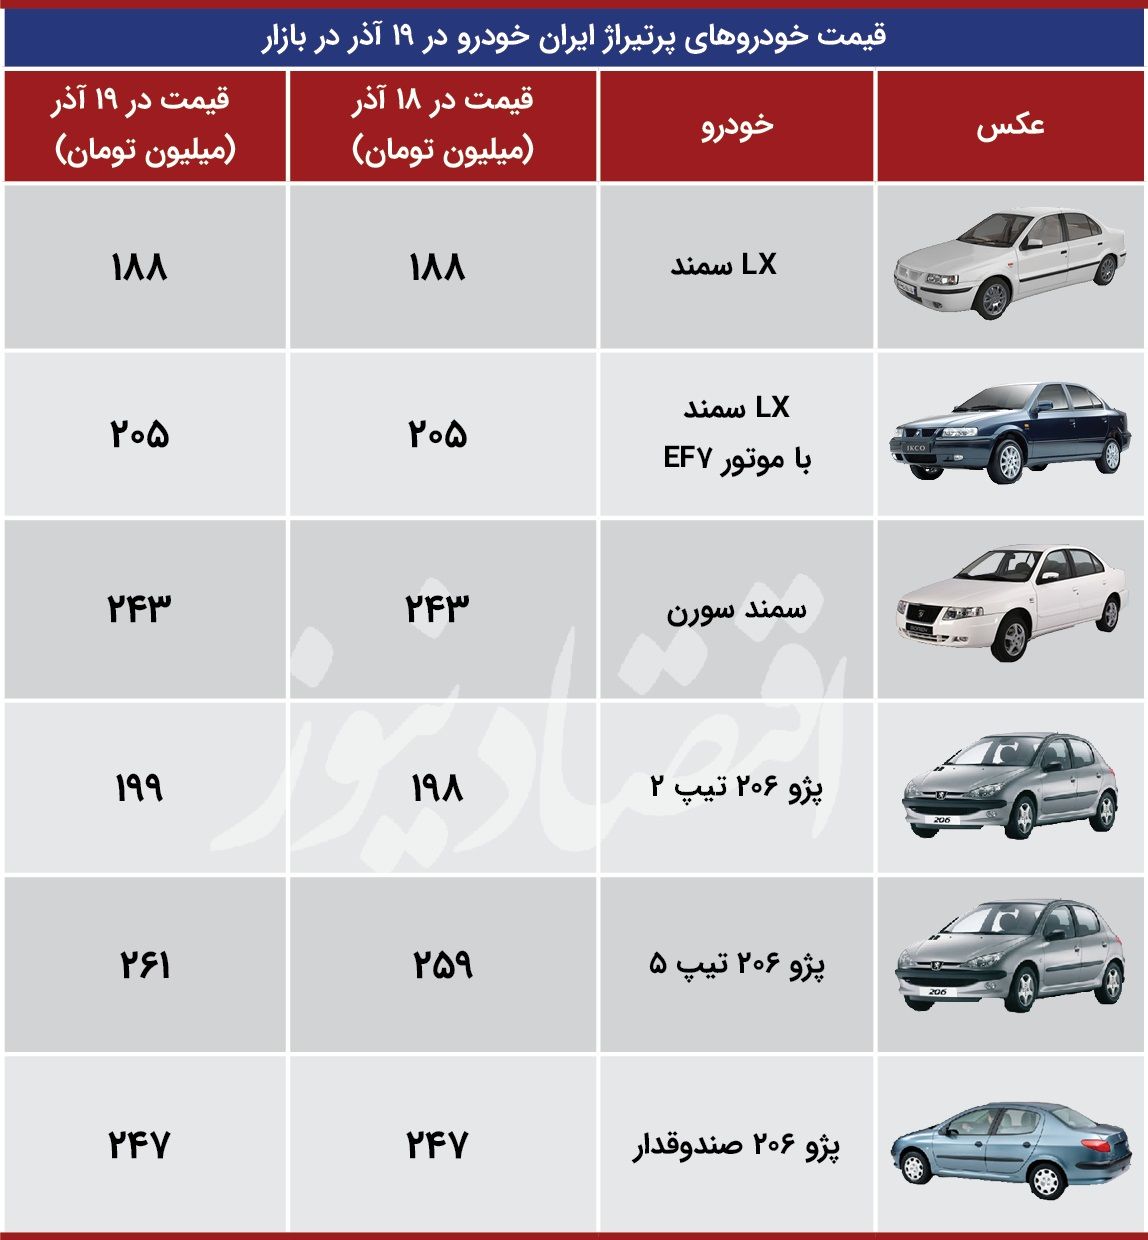 وضعیت خودروهای پرتیراژ ایران خودرو در بازار امروز